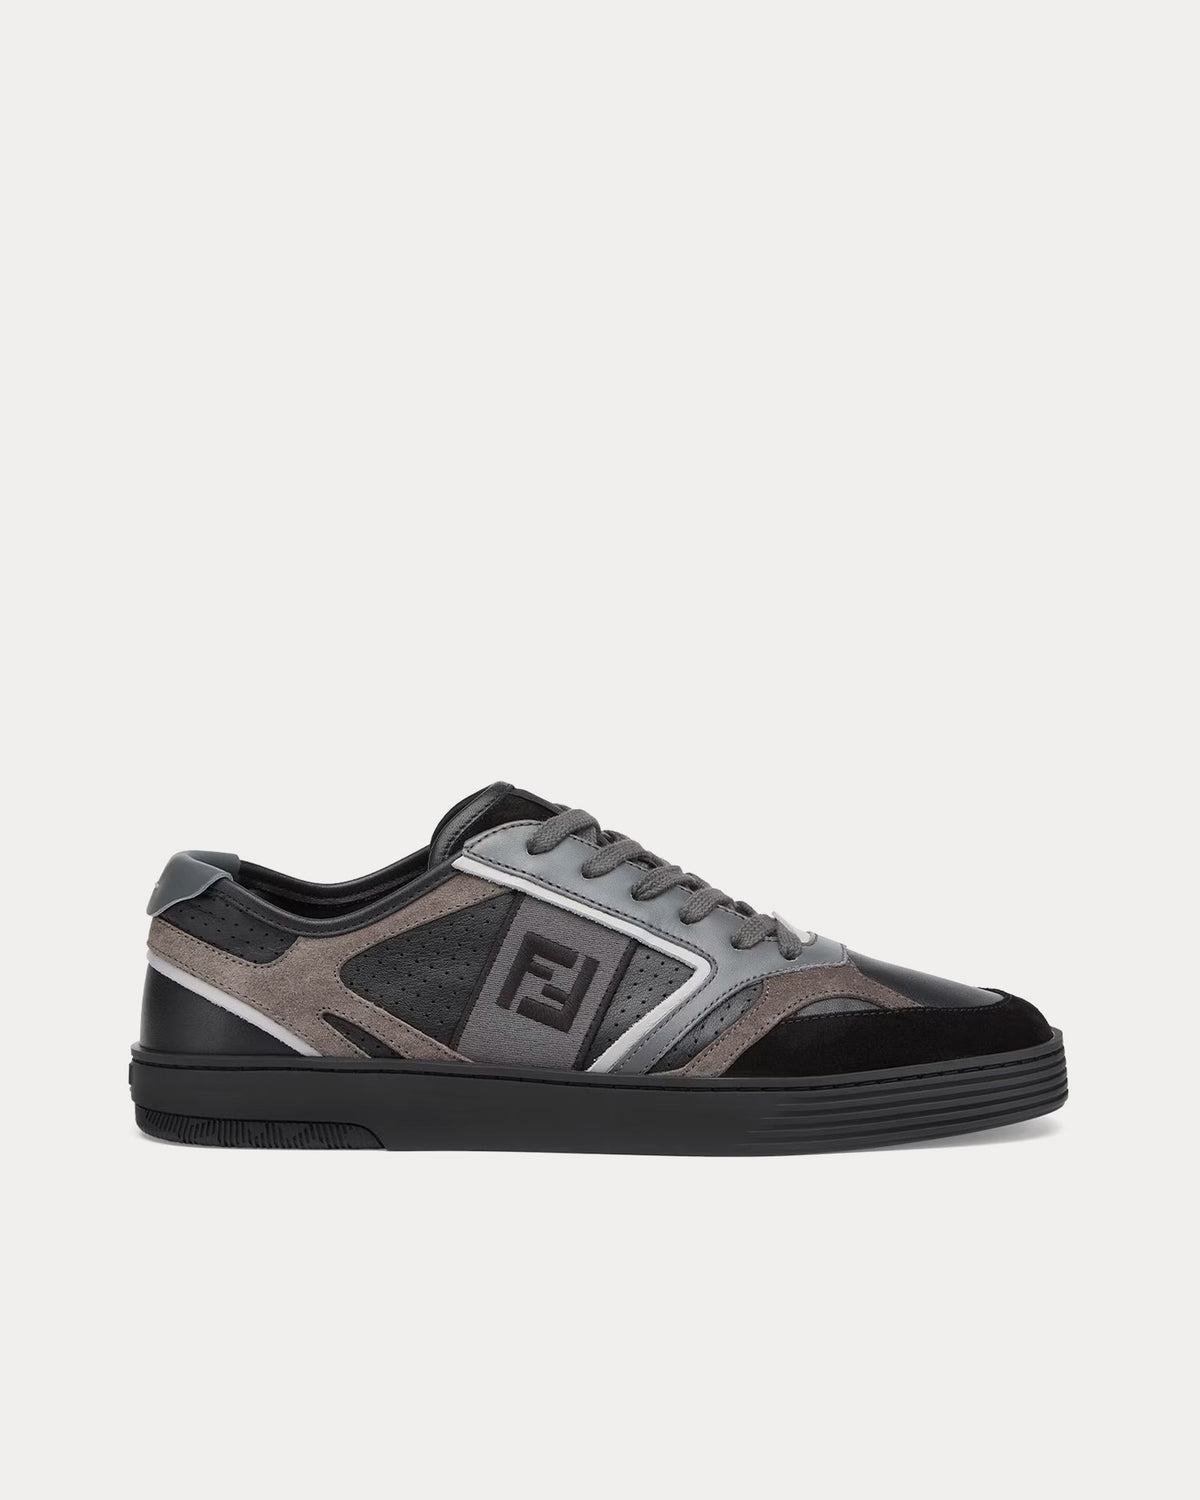 Fendi Men's New Summery Canvas Monogram Low Top Sneakers | Neiman Marcus